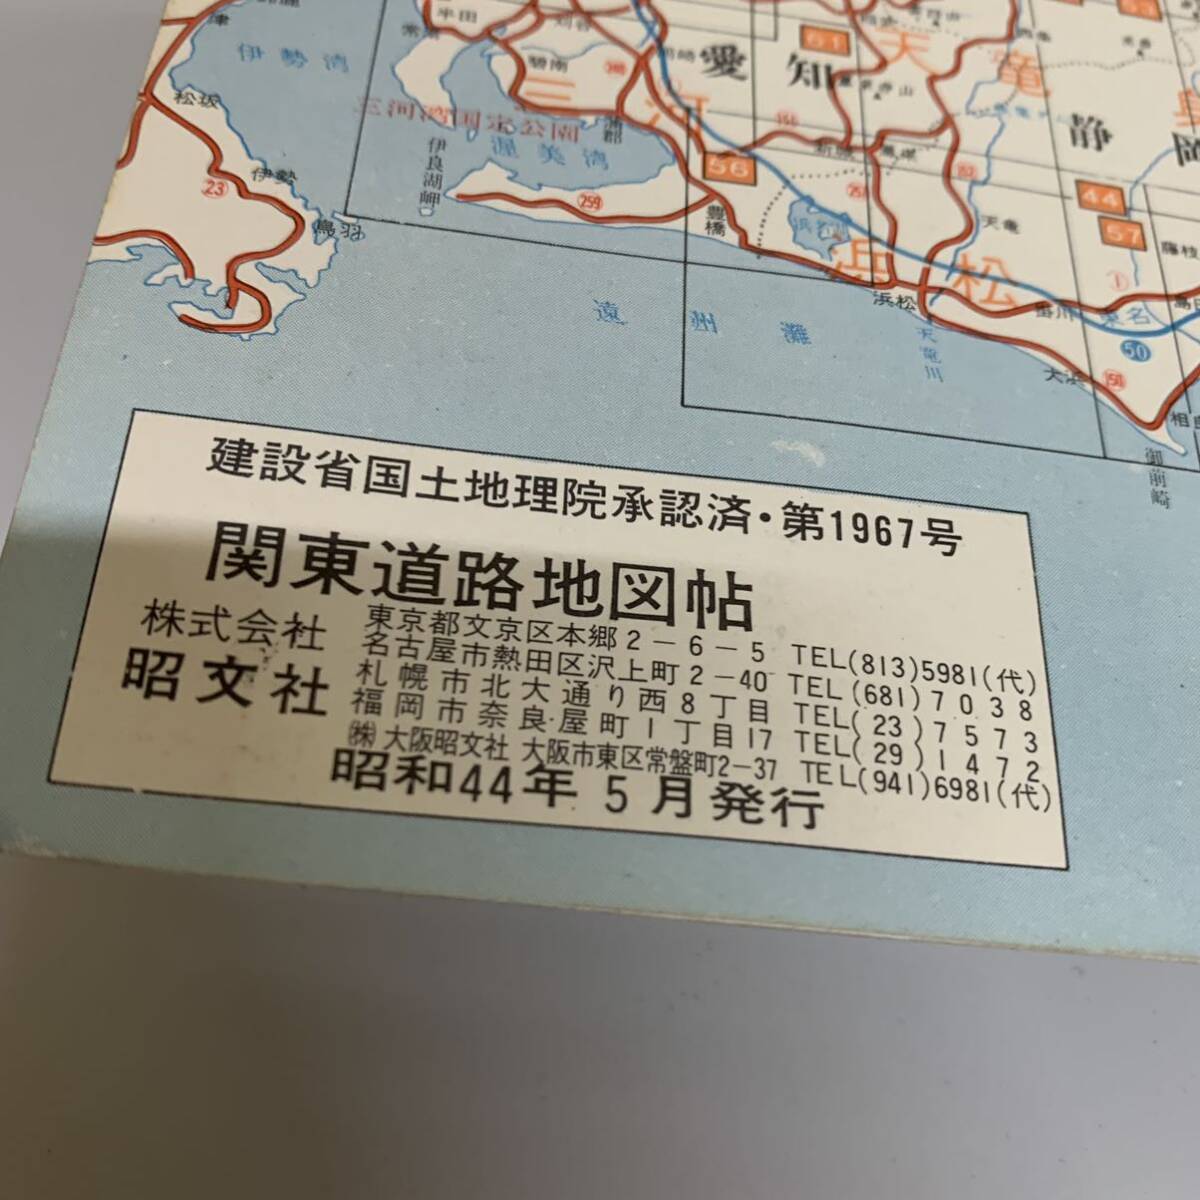 古地図本 ハンドル 関東道路地図 昭文社 昭和44年 5月発行 N95